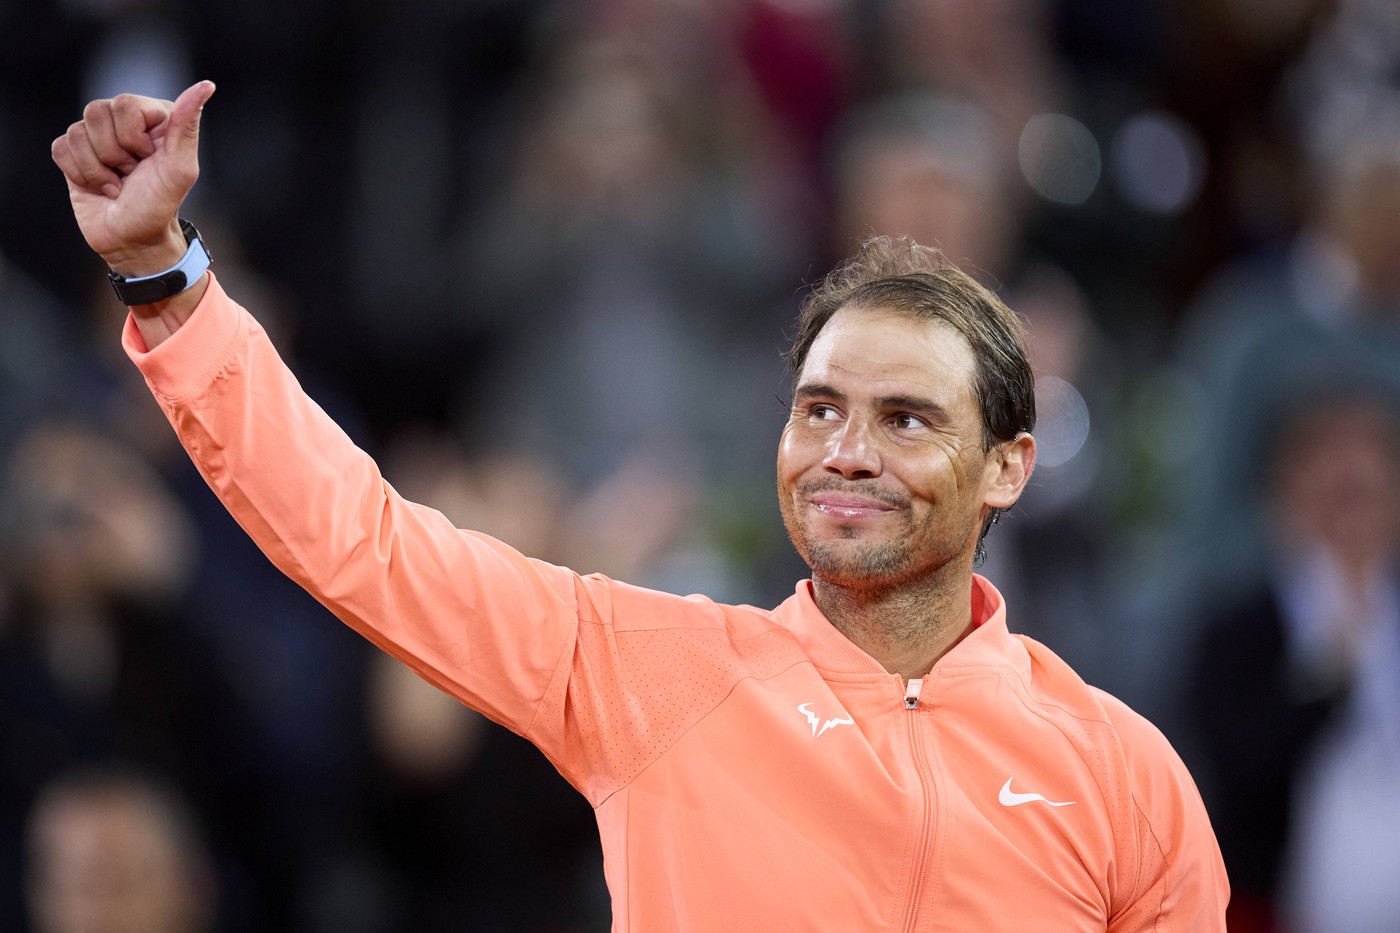 Veste excelentă primită de fanii lui Rafael Nadal! Ce promisiune le-a făcut spaniolul